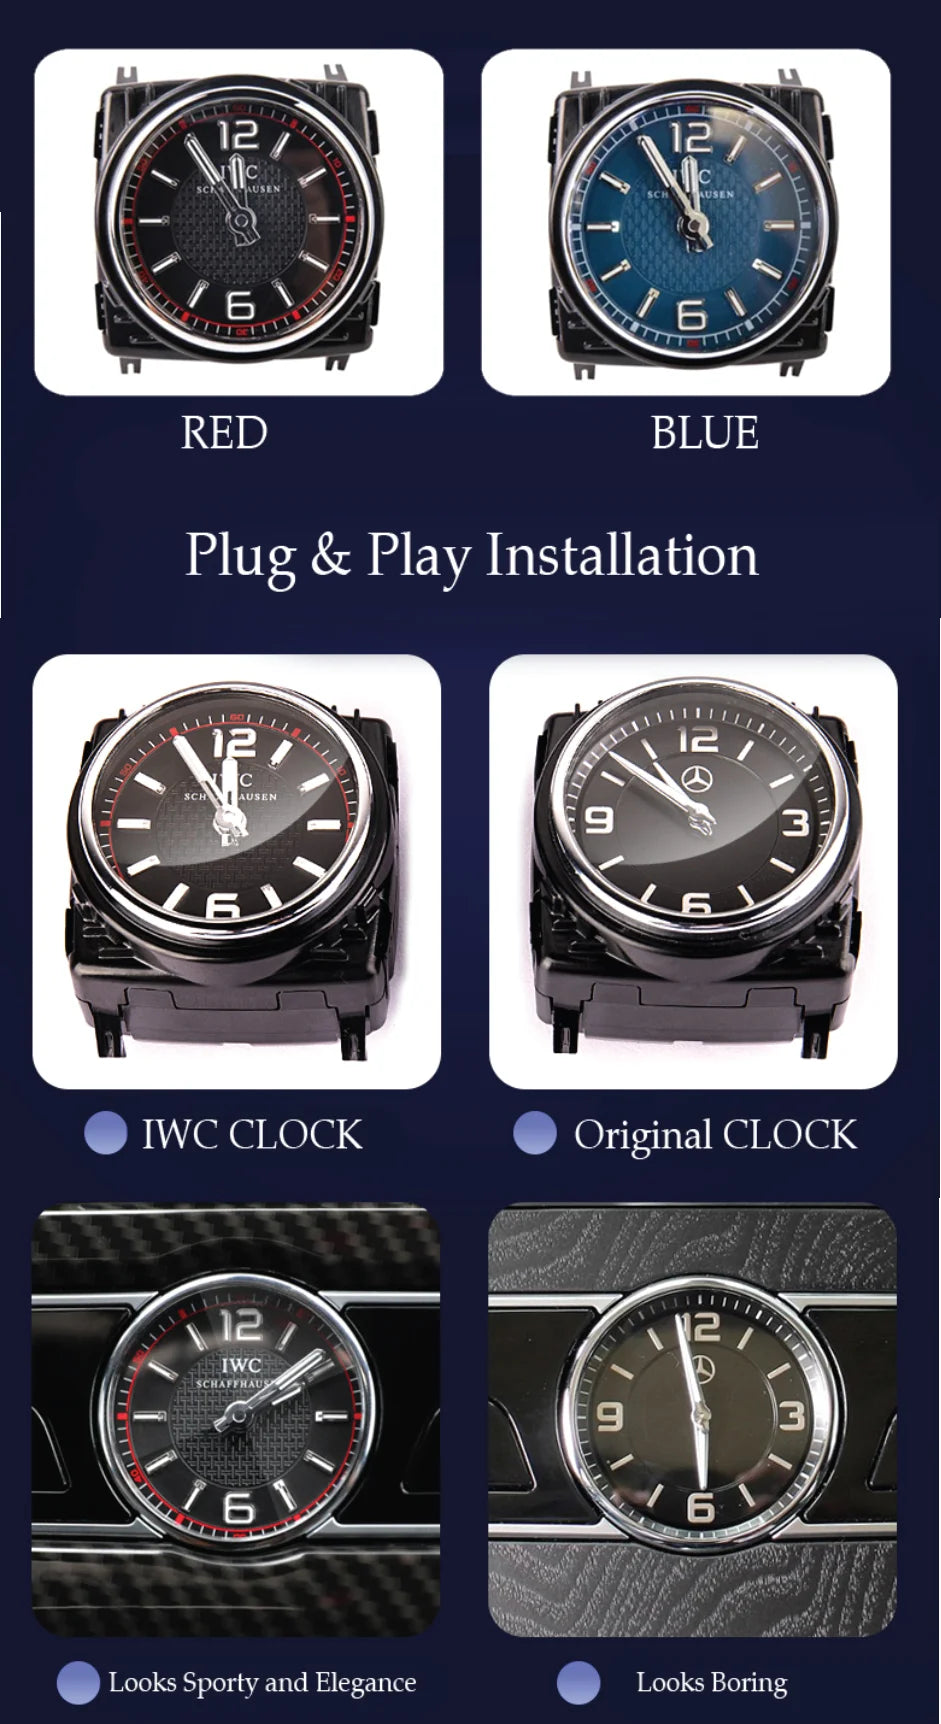 IWC AMG Watch Clock